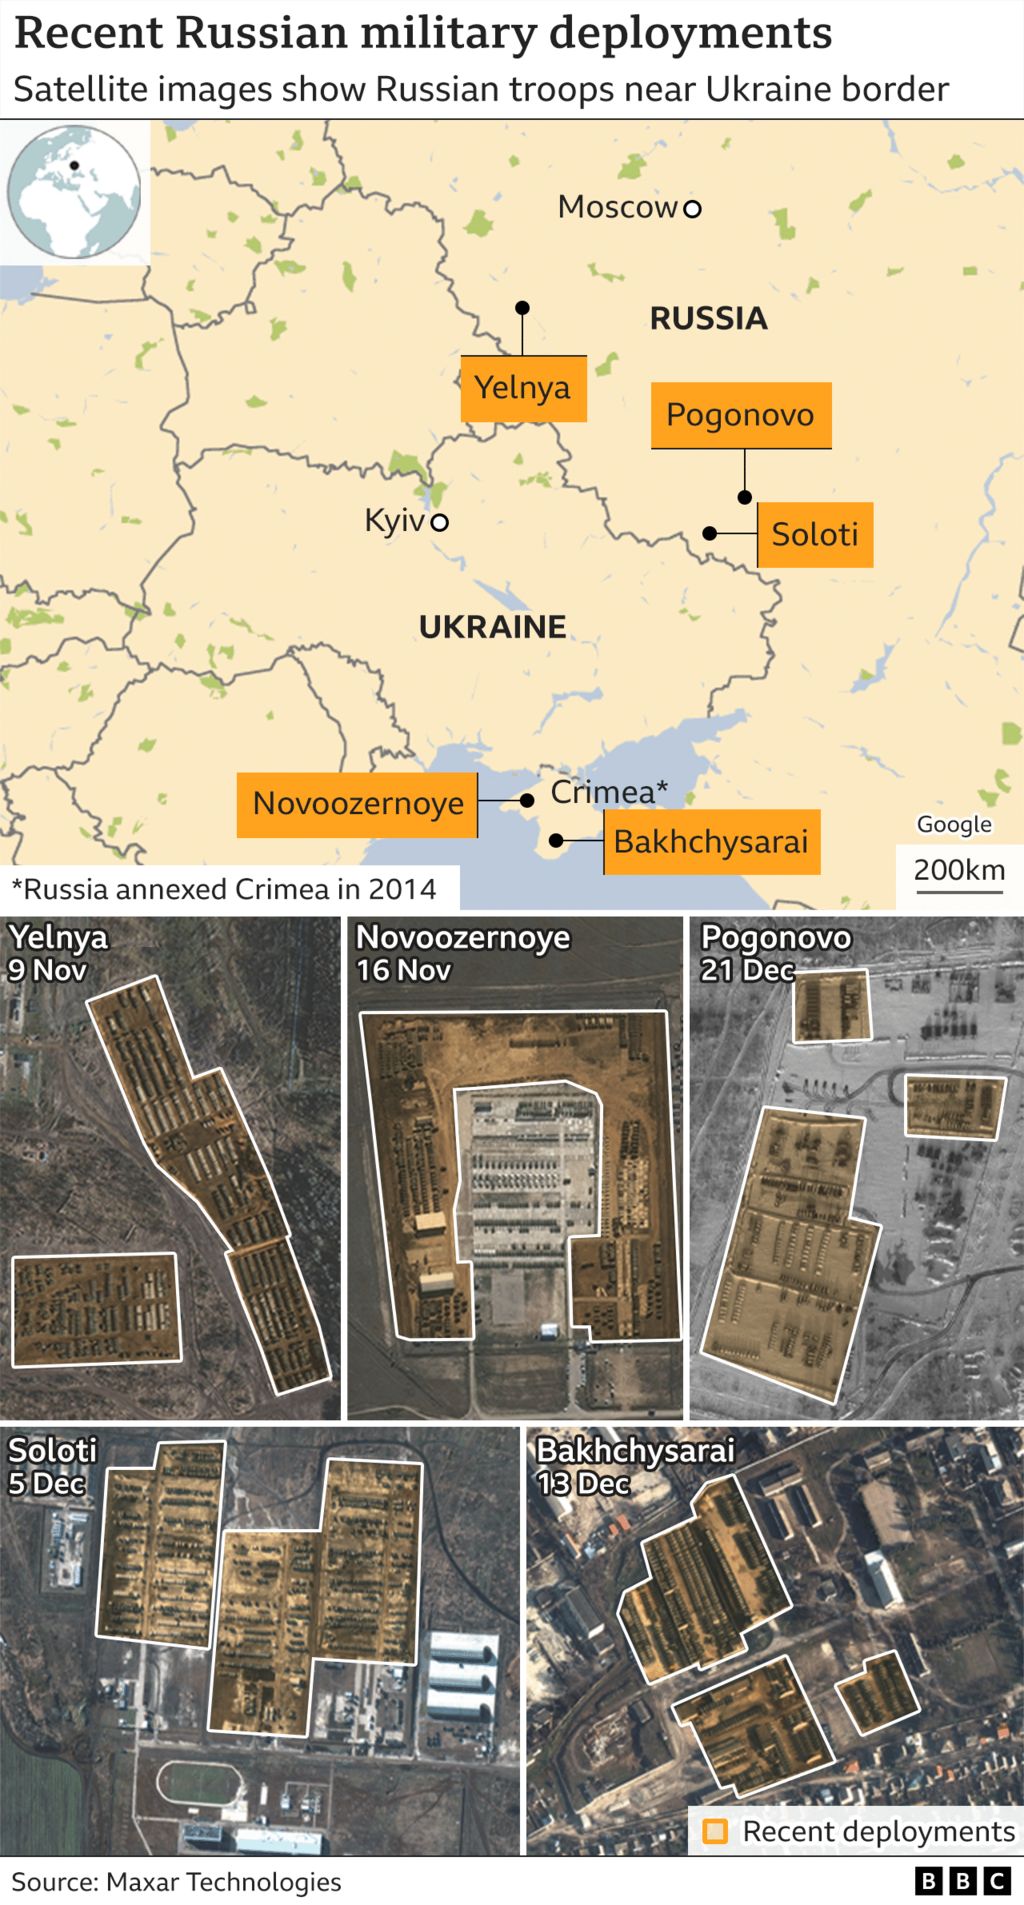 Karte von Russland und der Ukraine mit Satellitenbildern, die die jüngsten russischen Militäreinsätze nahe der Grenze zeigen